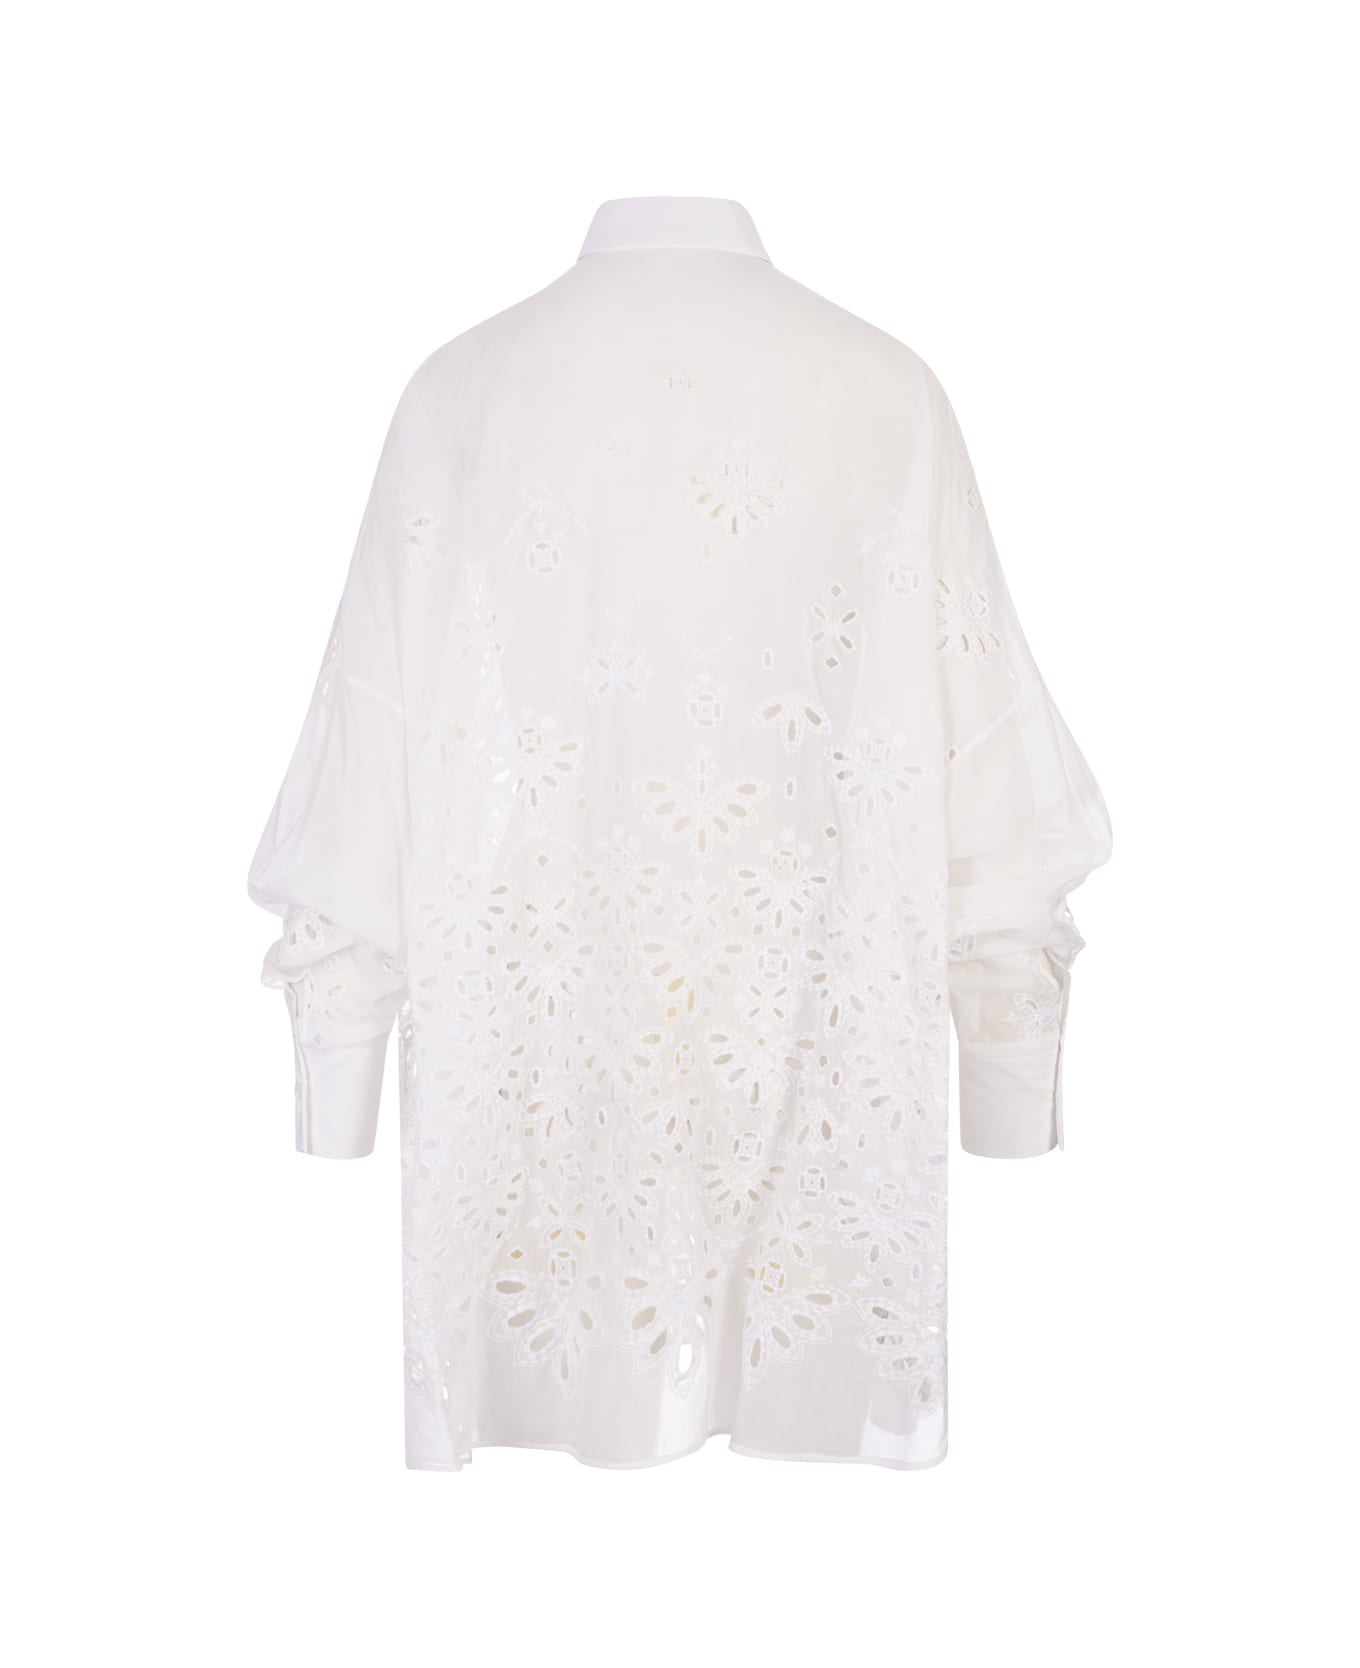 Ermanno Scervino White Over Shirt With Sangallo Lace - White